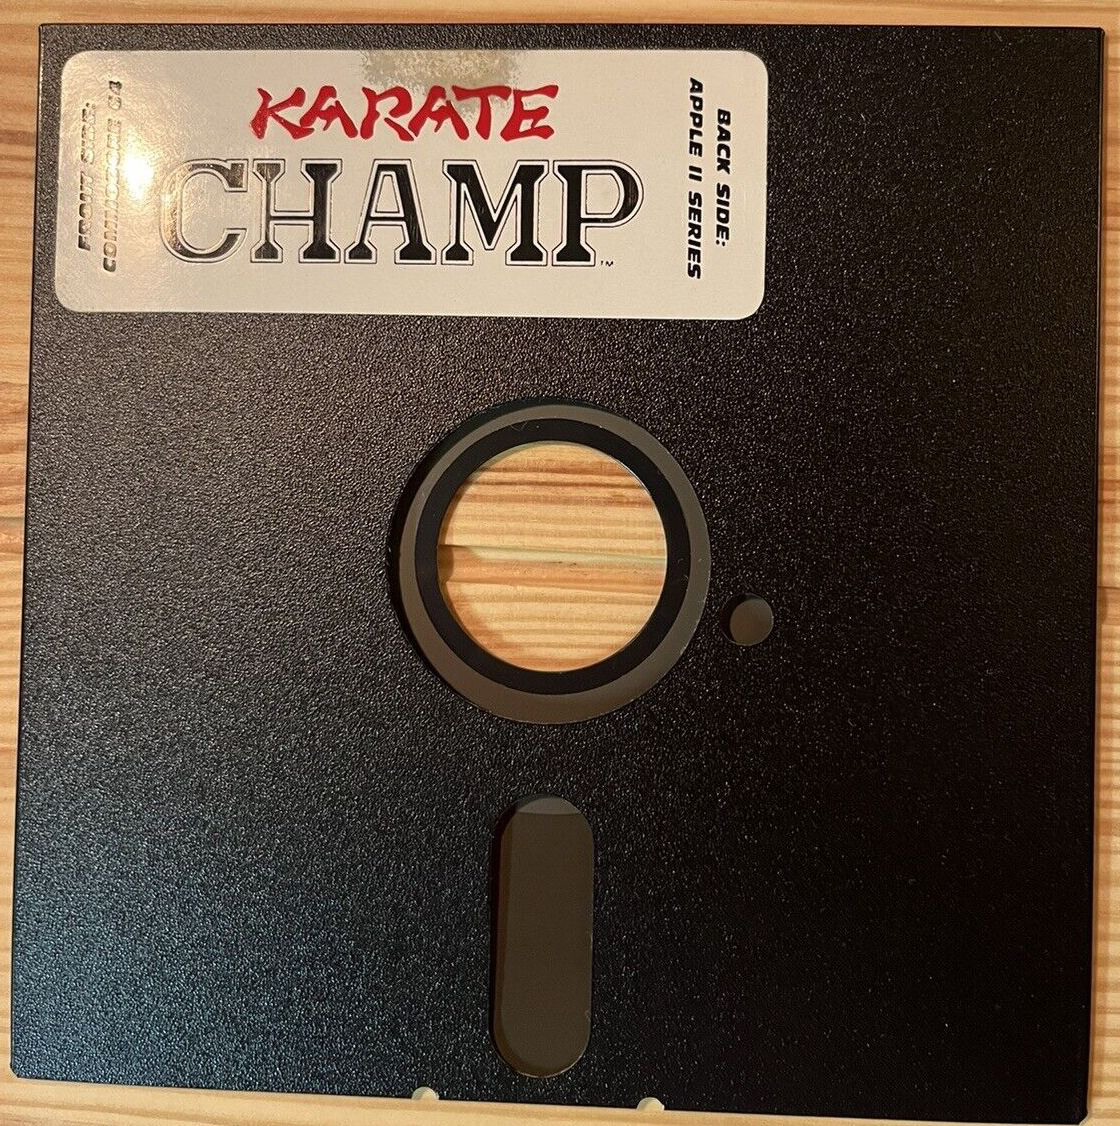 Karate Champ - Commodore 64